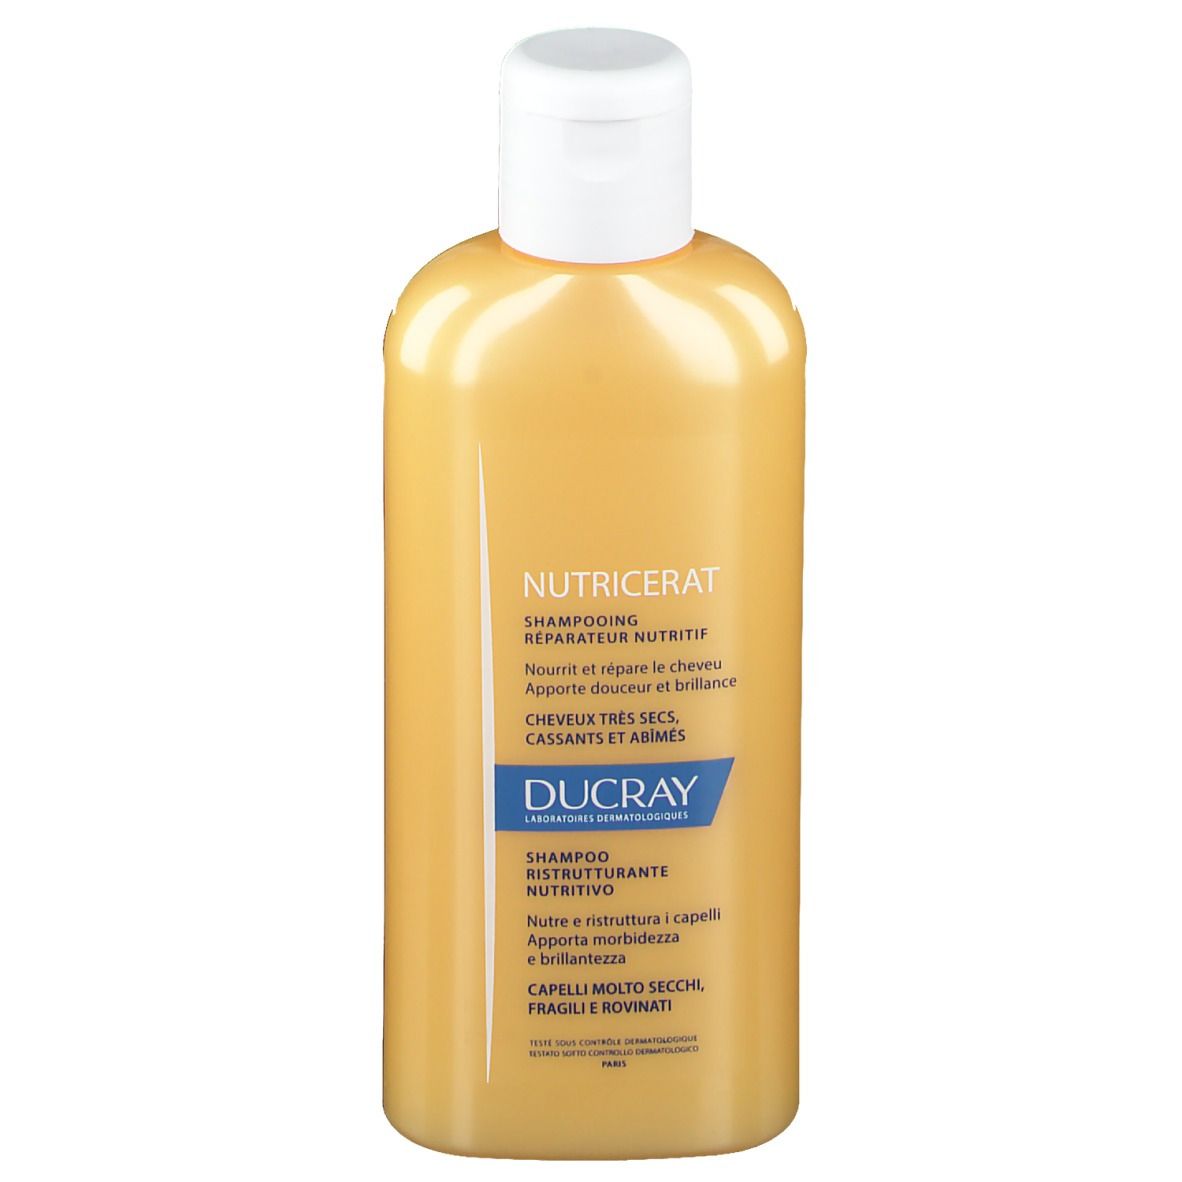 DUCRAY NUTRICERAT Shampoo